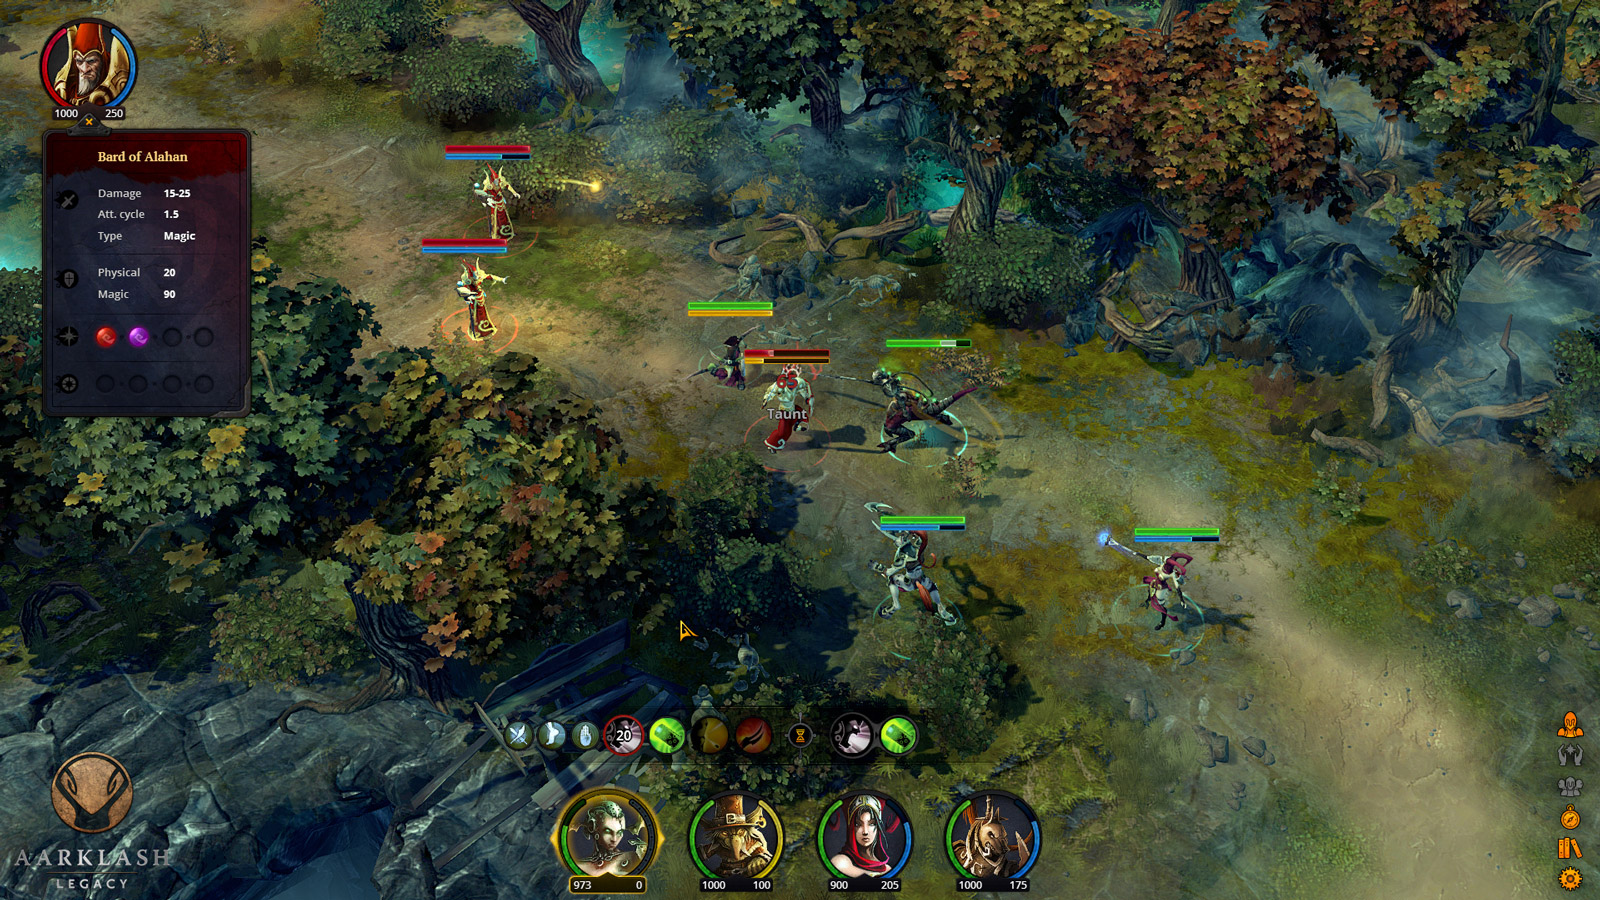 Aarklash: Legacy - miks akcji, strategii i RPG w sosie fantasy - na pierwszym gameplayu